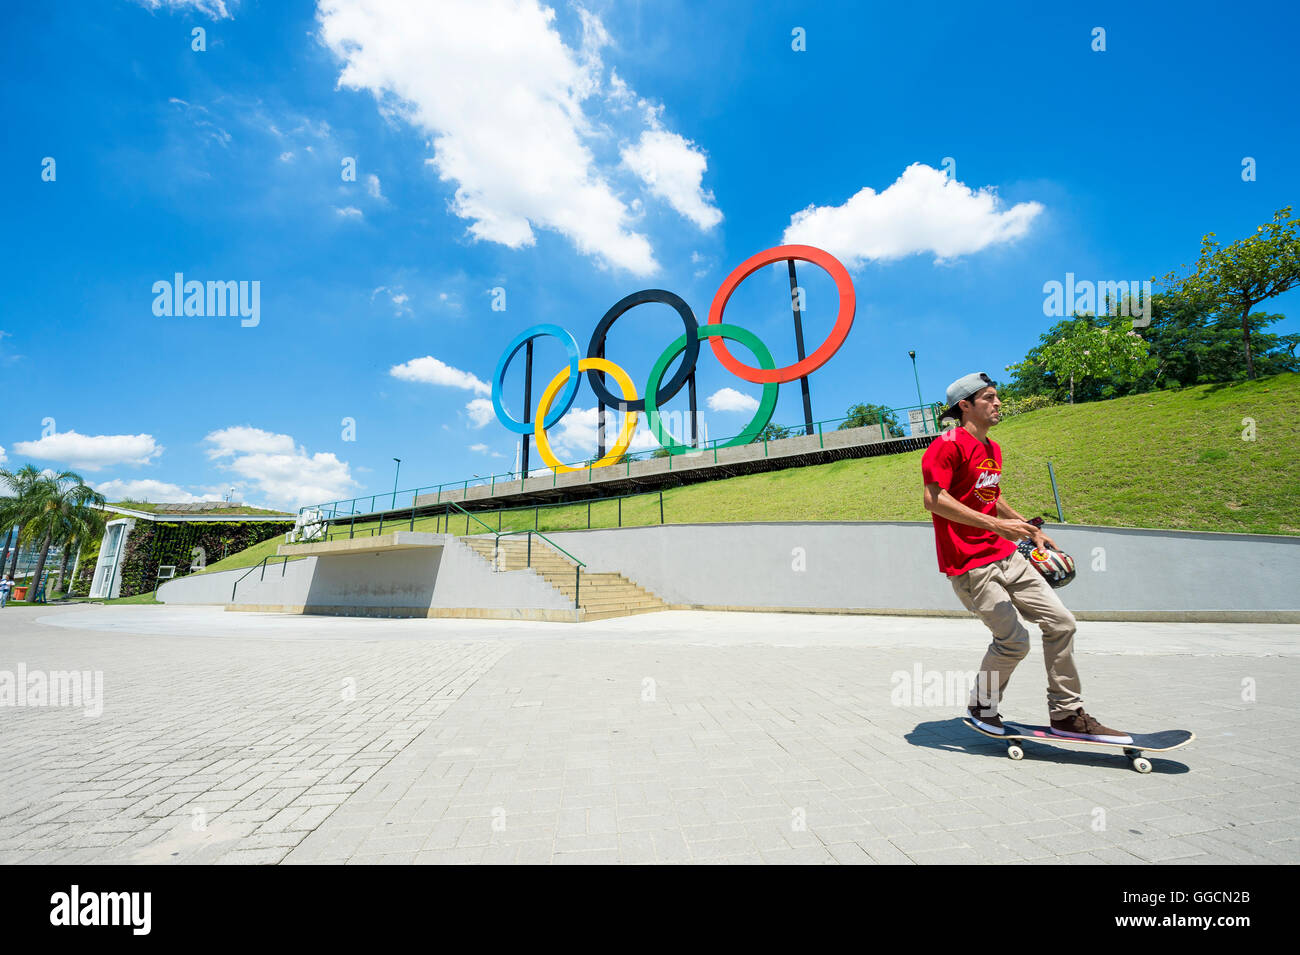 RIO DE JANEIRO - Mars 18, 2016 : un jeune skateur professionnel en face de patins installés pour les anneaux olympiques Jeux d'été 2016. Banque D'Images